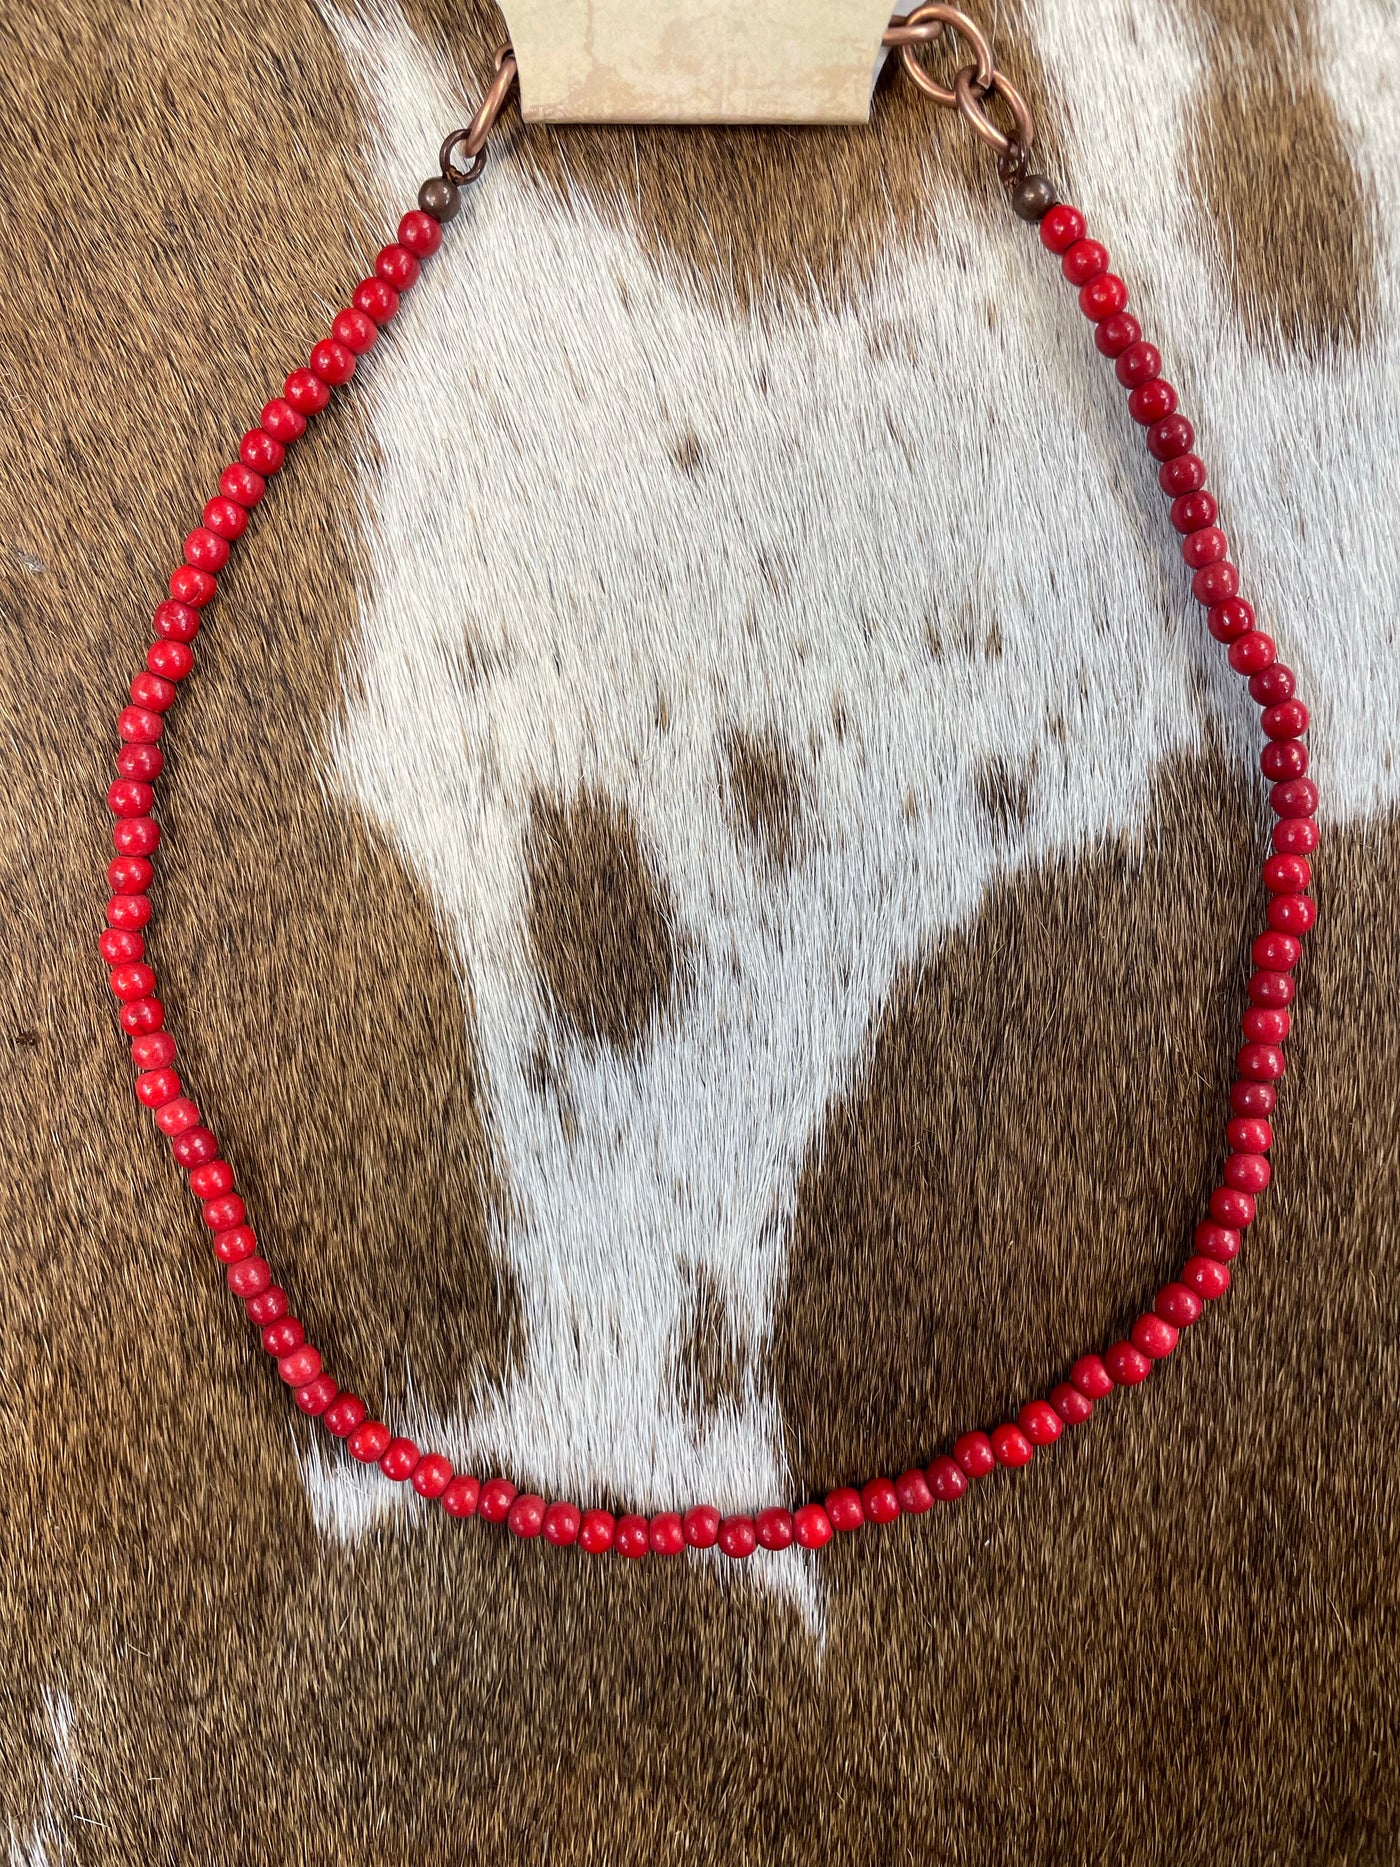 The Nebraska Necklace - Red